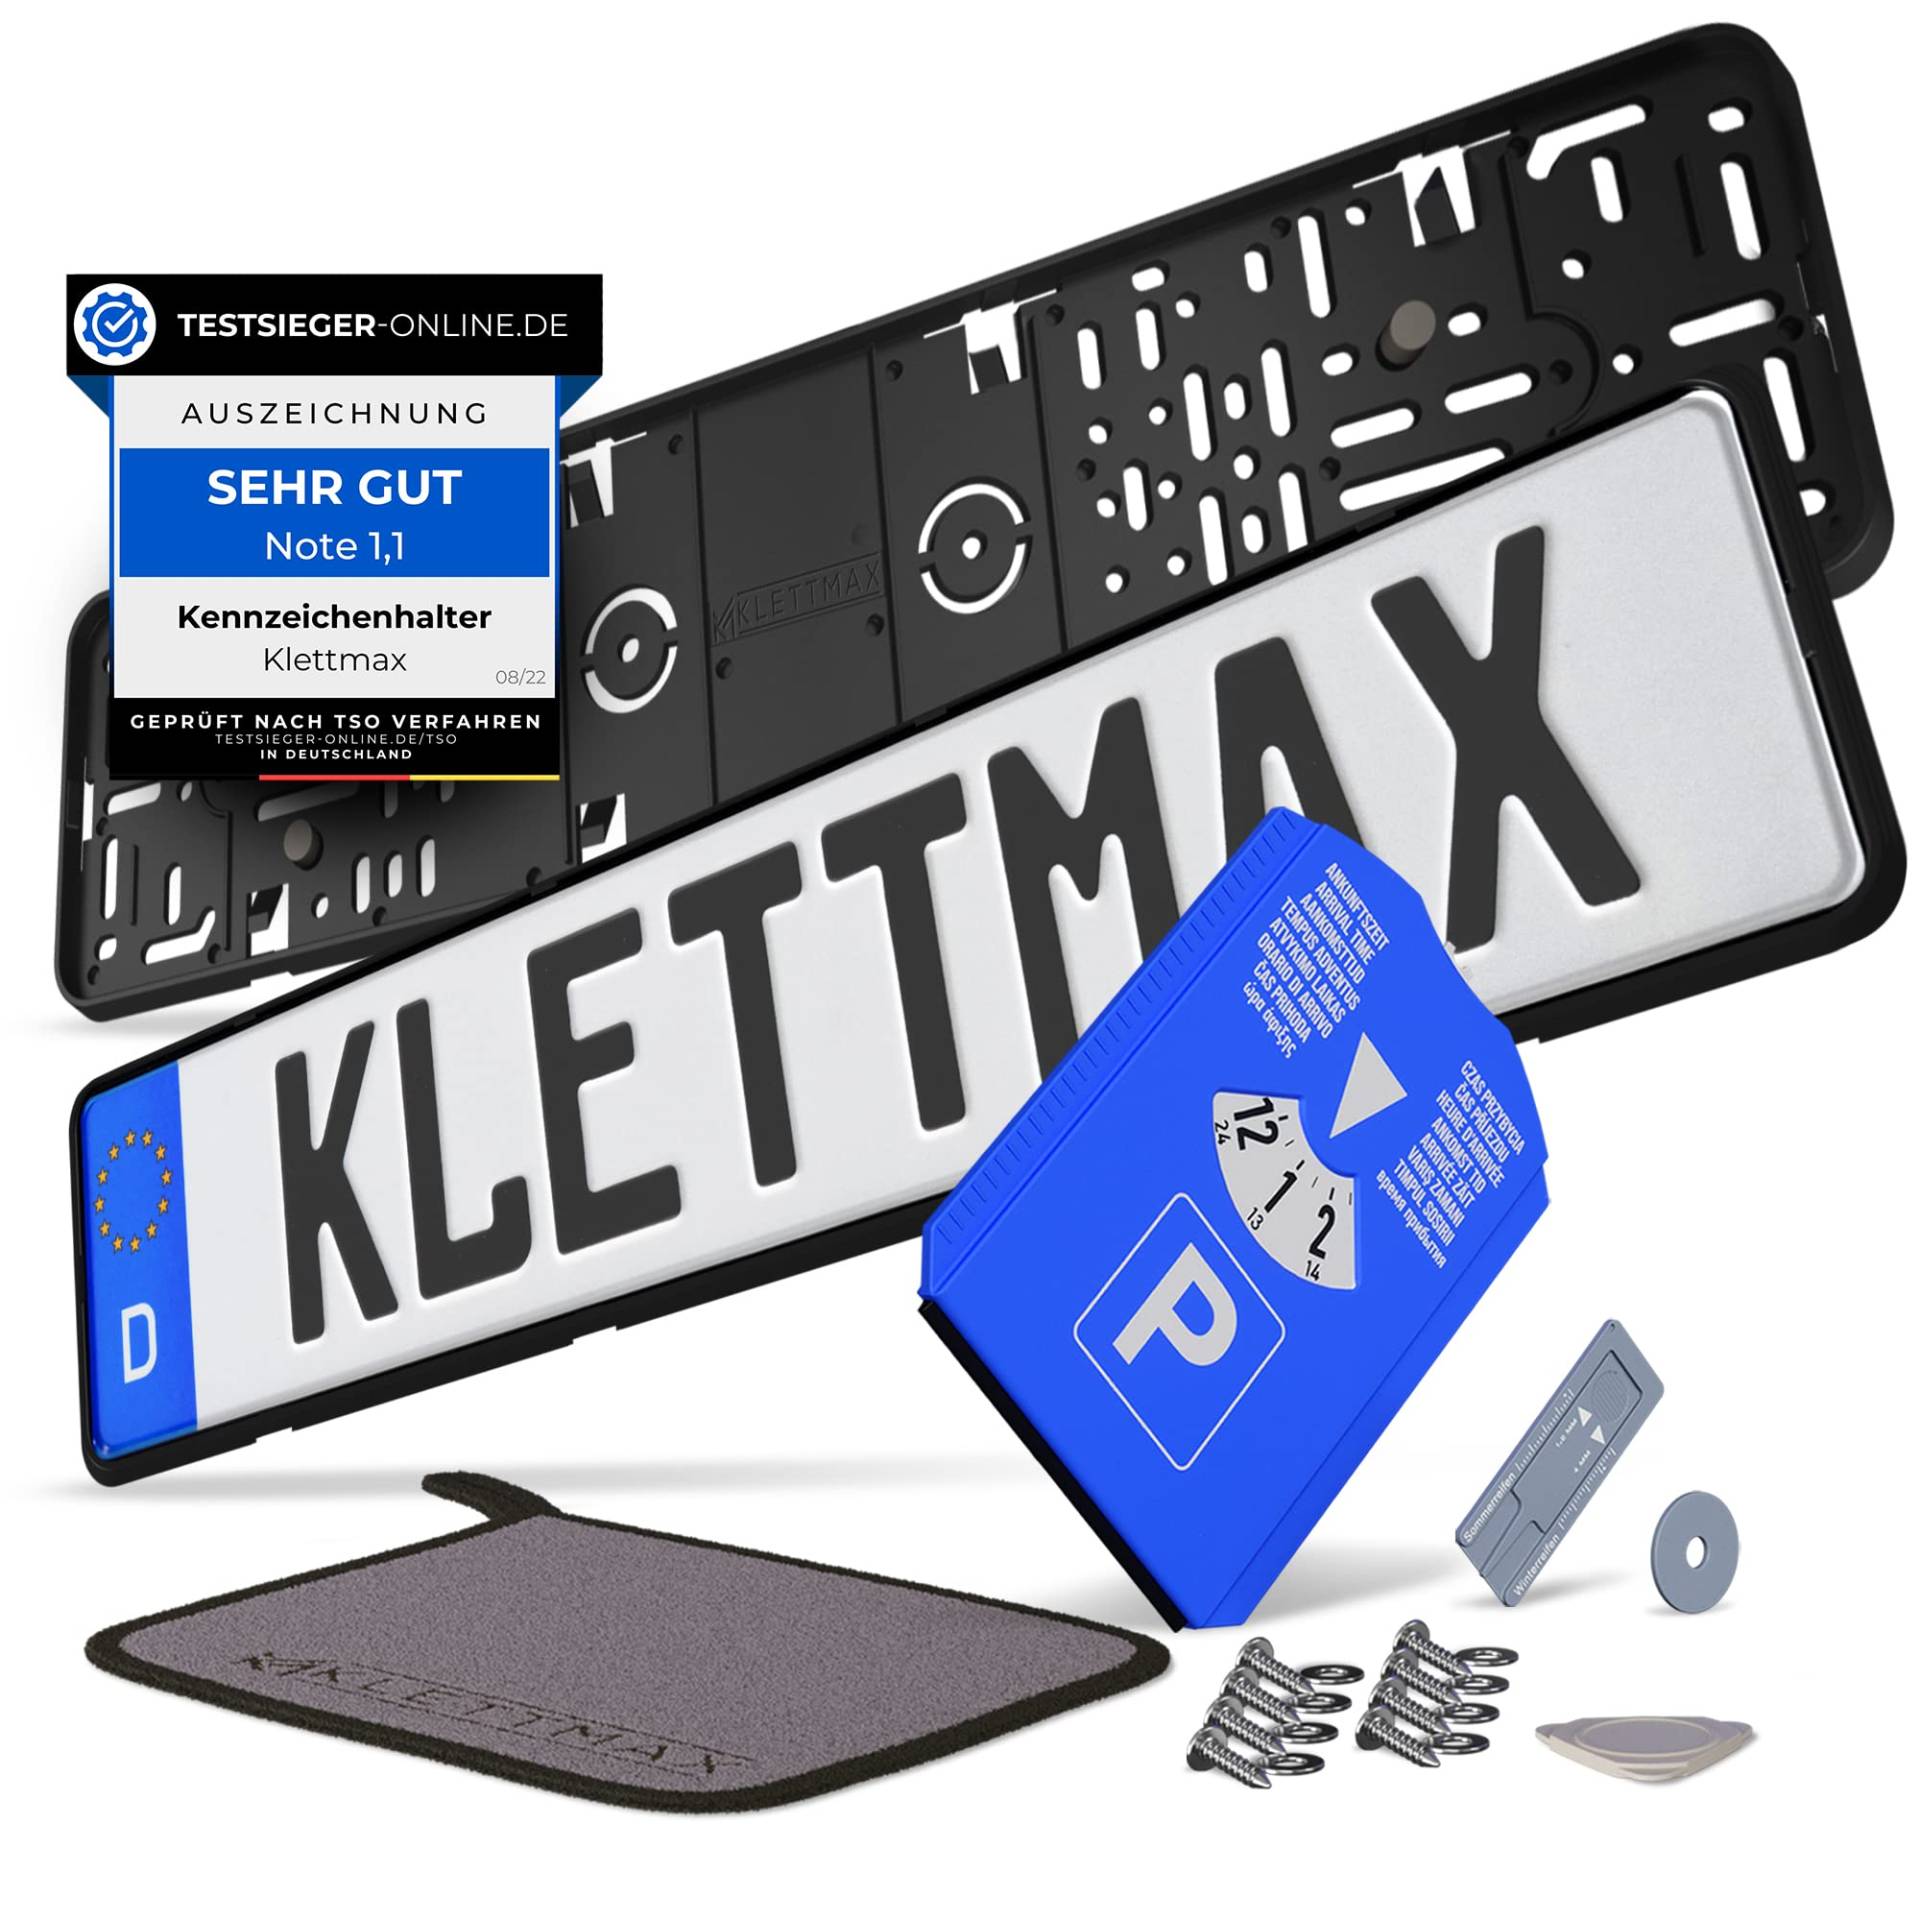 KLETTMAX® 2X Kennzeichenhalterung Rahmenlos | Nummernschildhalterung für Autos | Nummernschildhalter | für Kfz Kennzeichen |Nicht für Österreich & 3D Kennzeichen von Klettmax